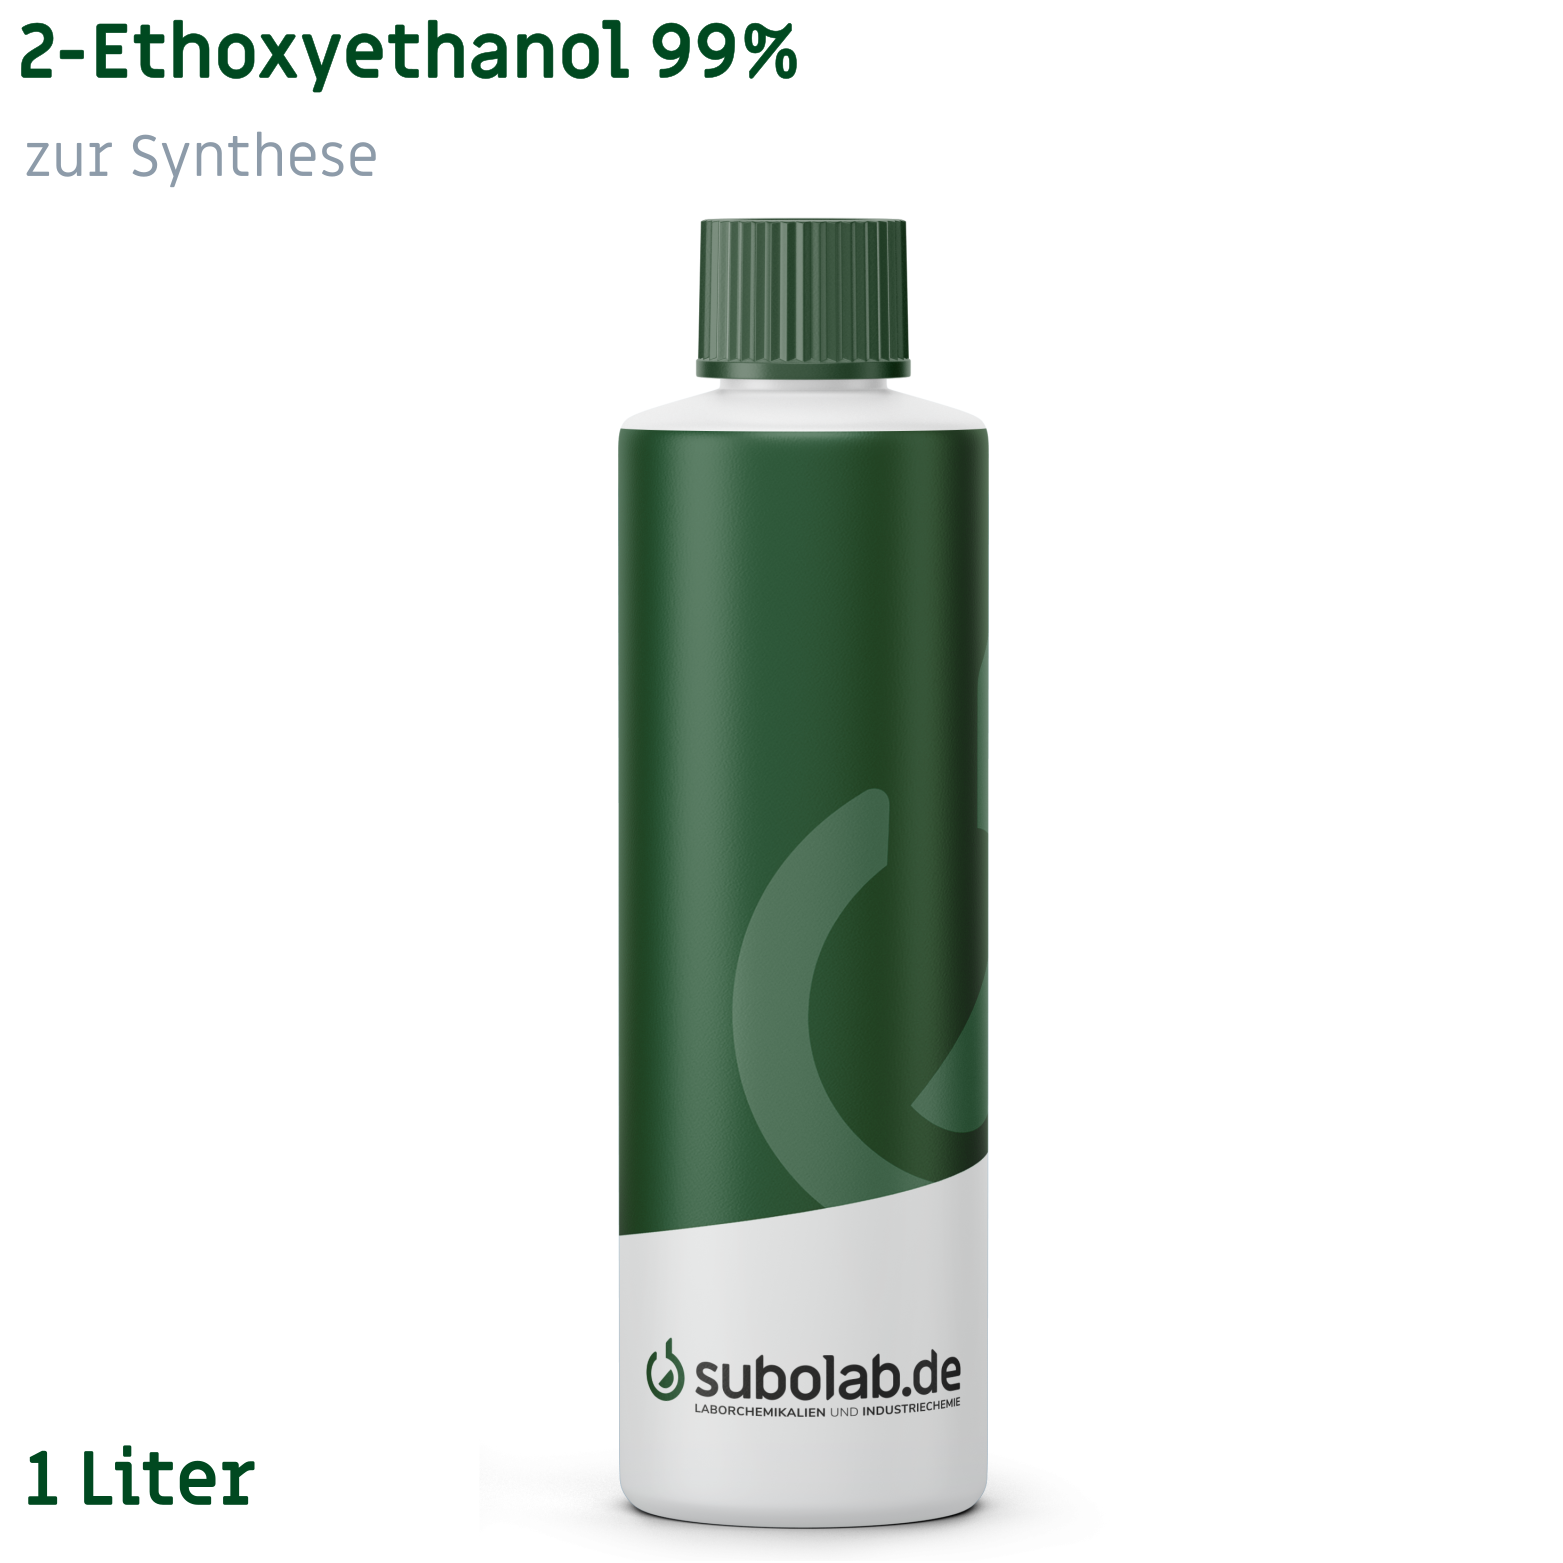 Bild von 2-Ethoxyethanol 99% zur Synthese (1 Liter)